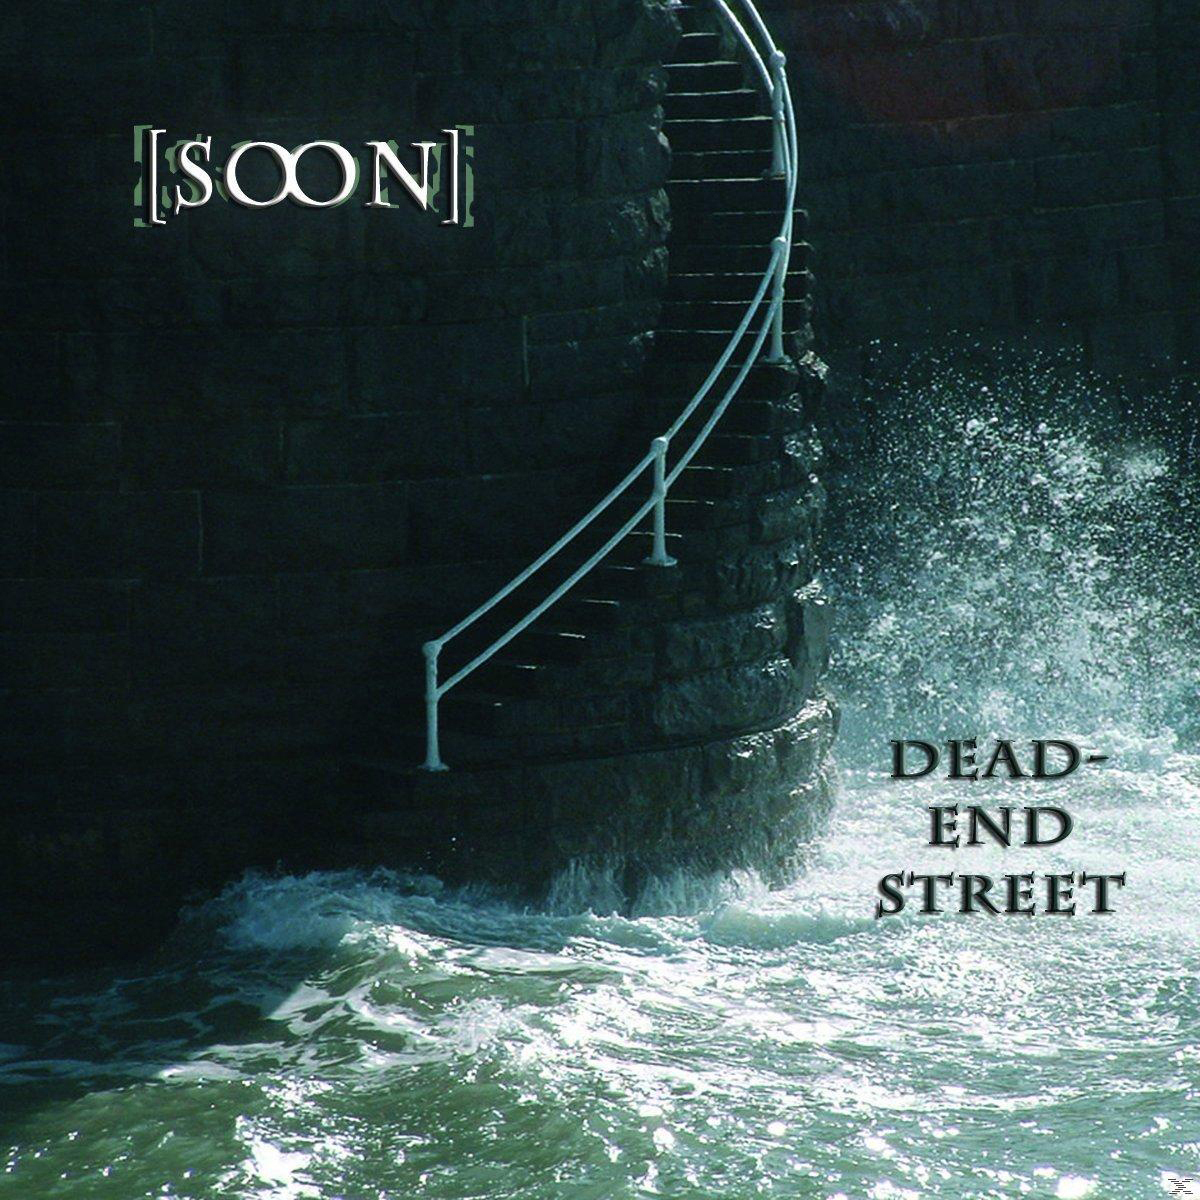 - Dead-End - [soon] (CD) Street